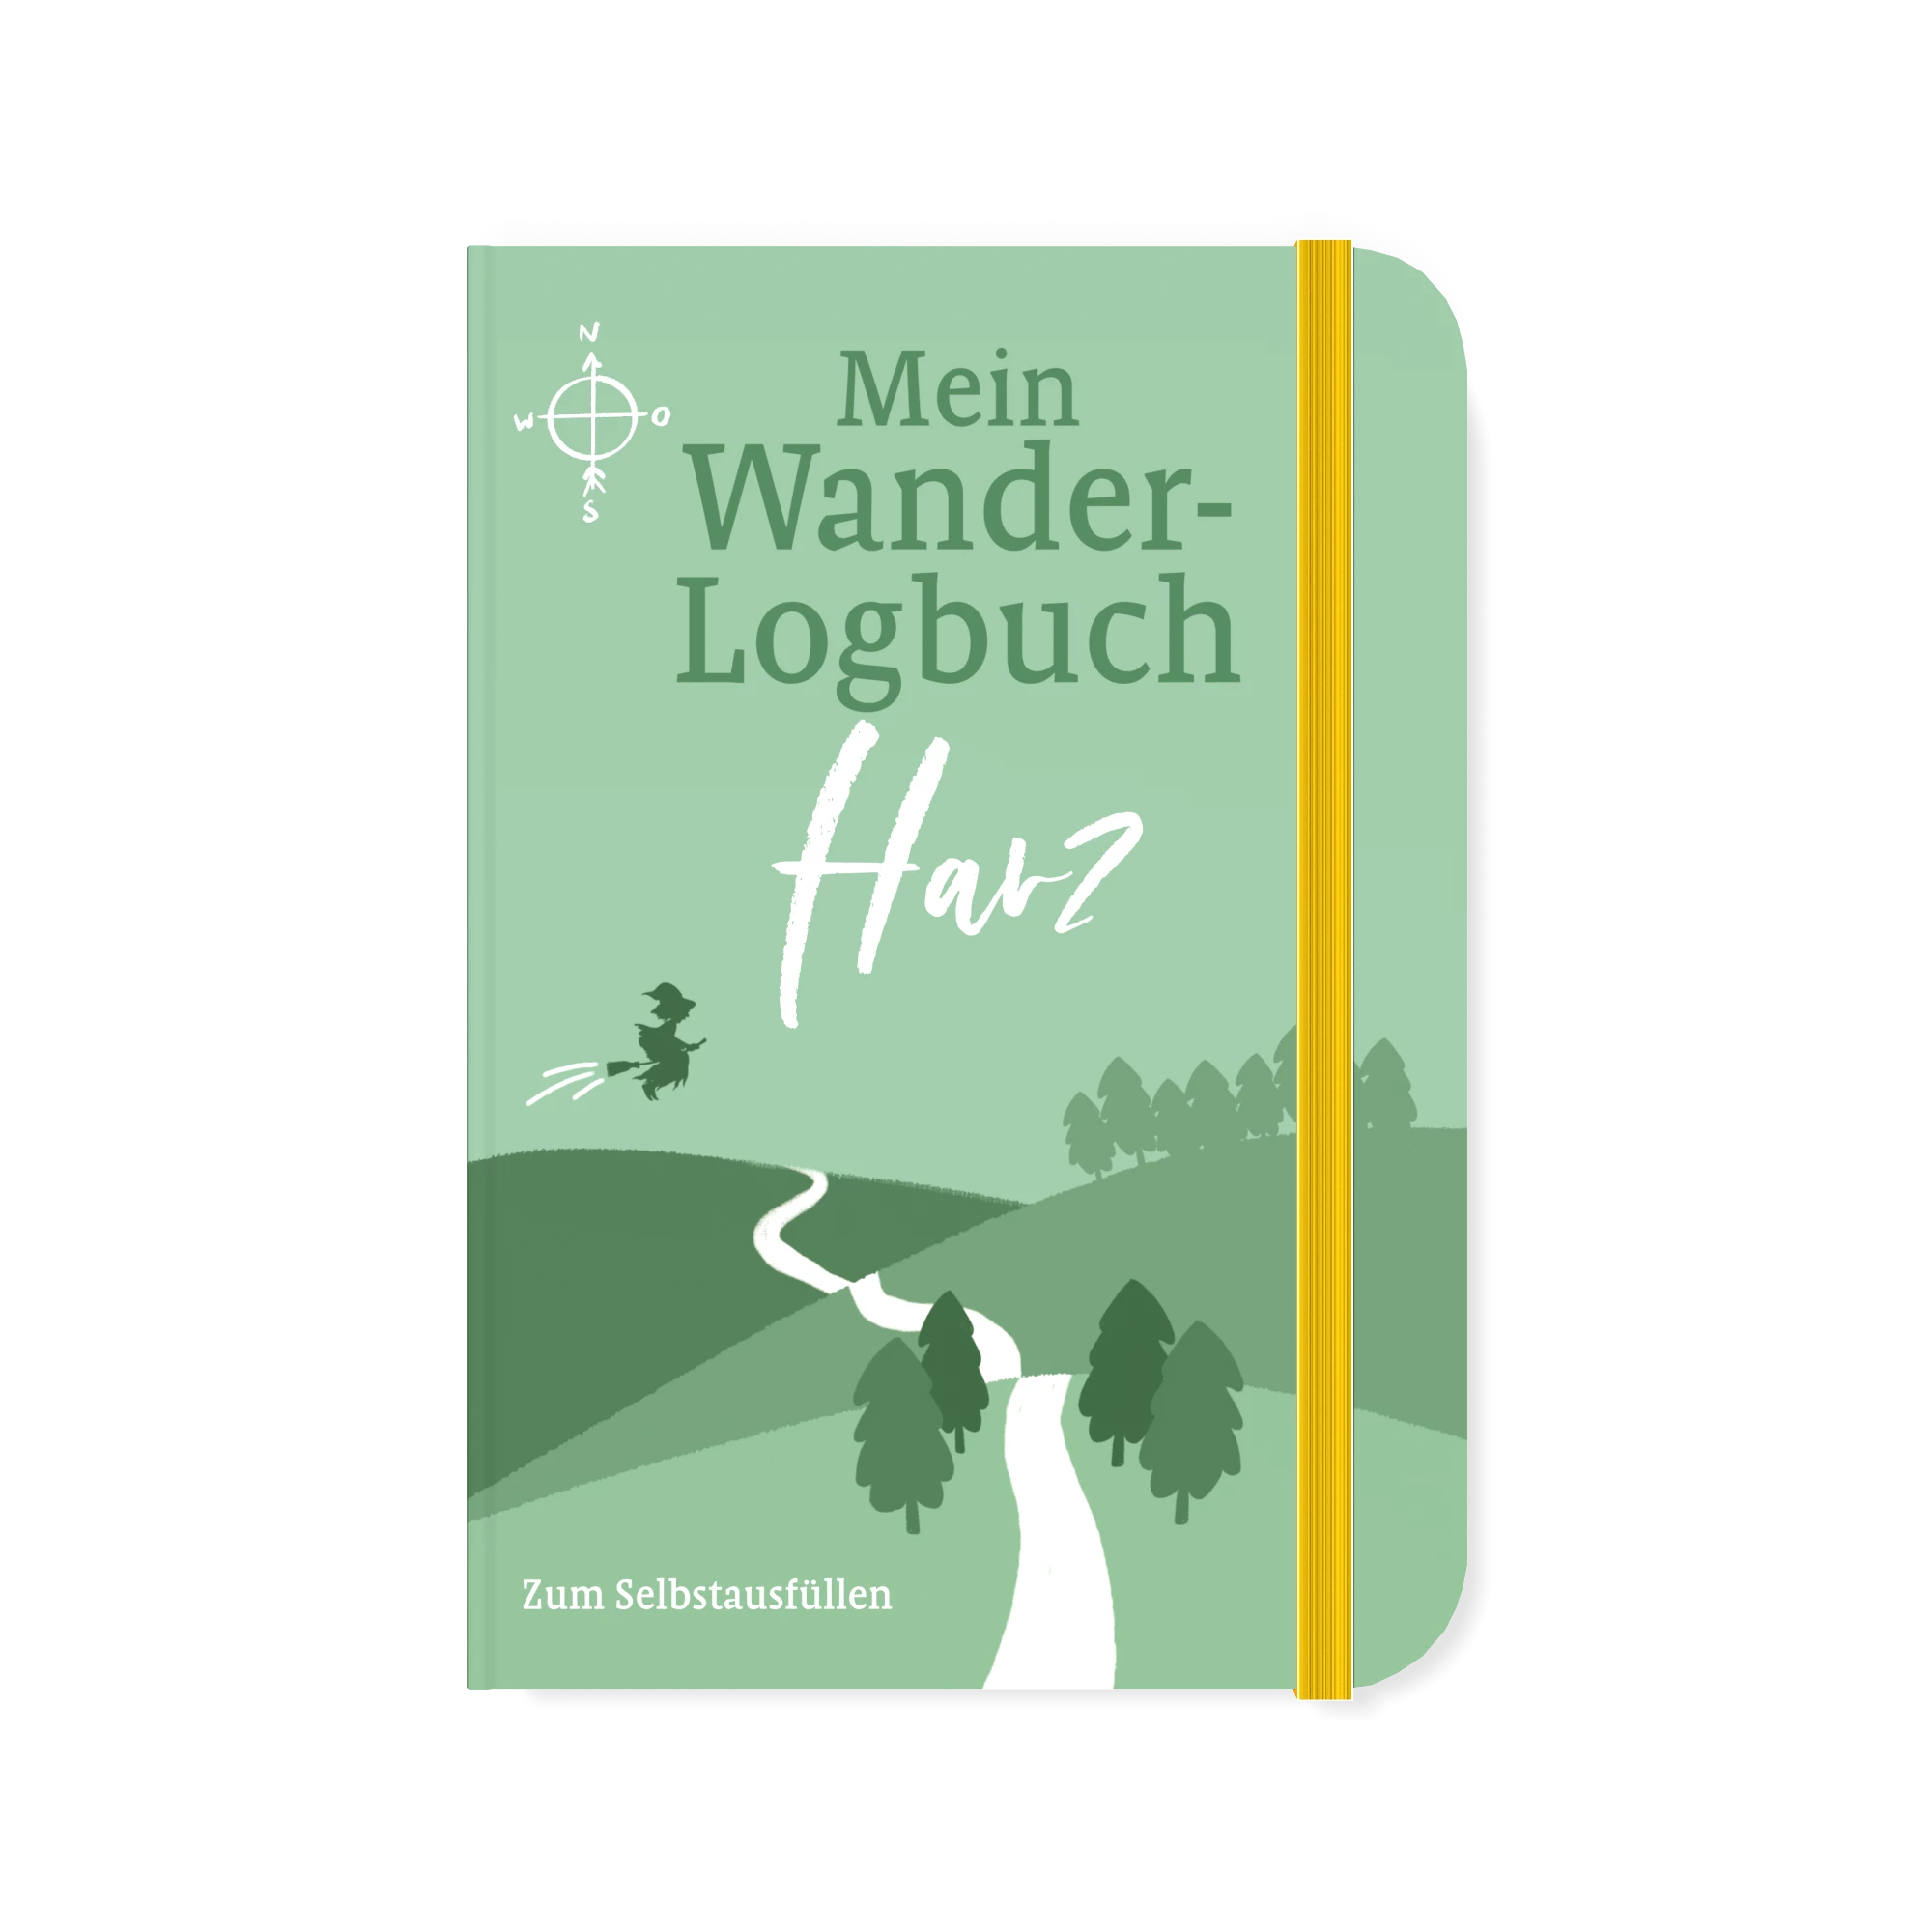 Wander-Logbuch Harz